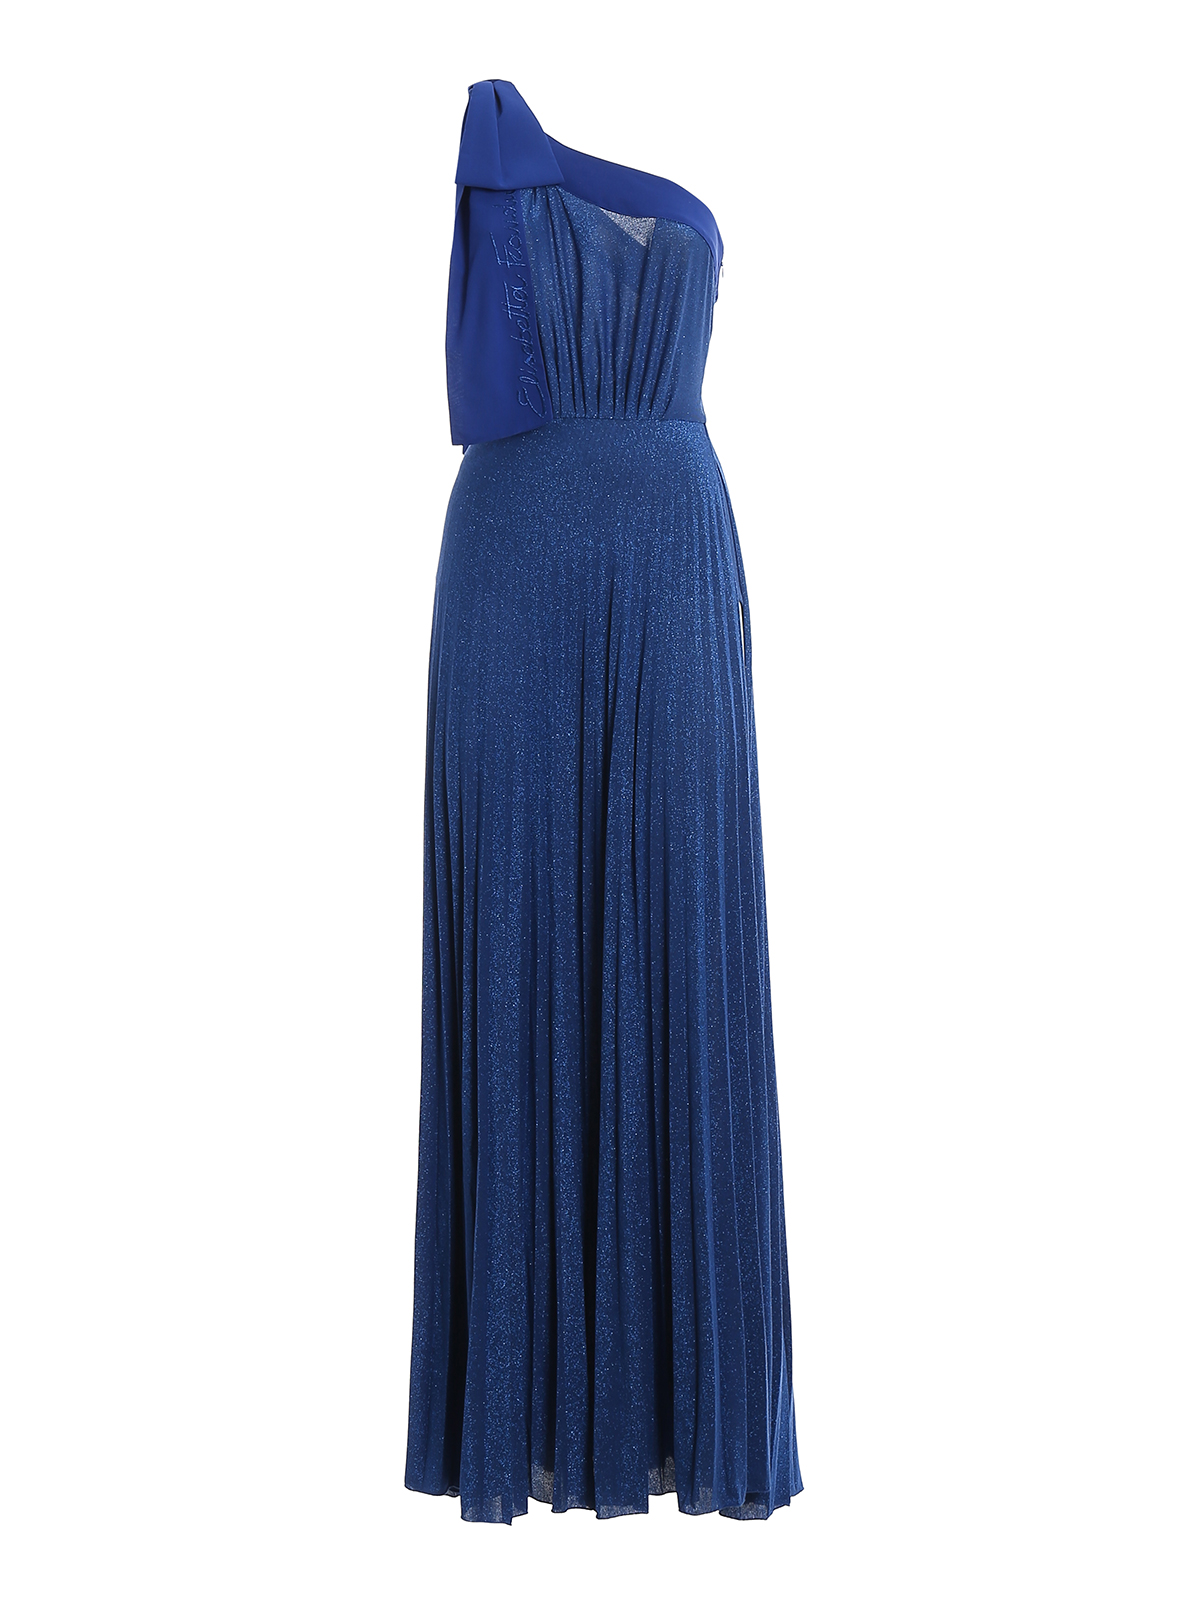 Elisabetta Franchi Red Carpet One Shoulder Cobalt Blue Gown